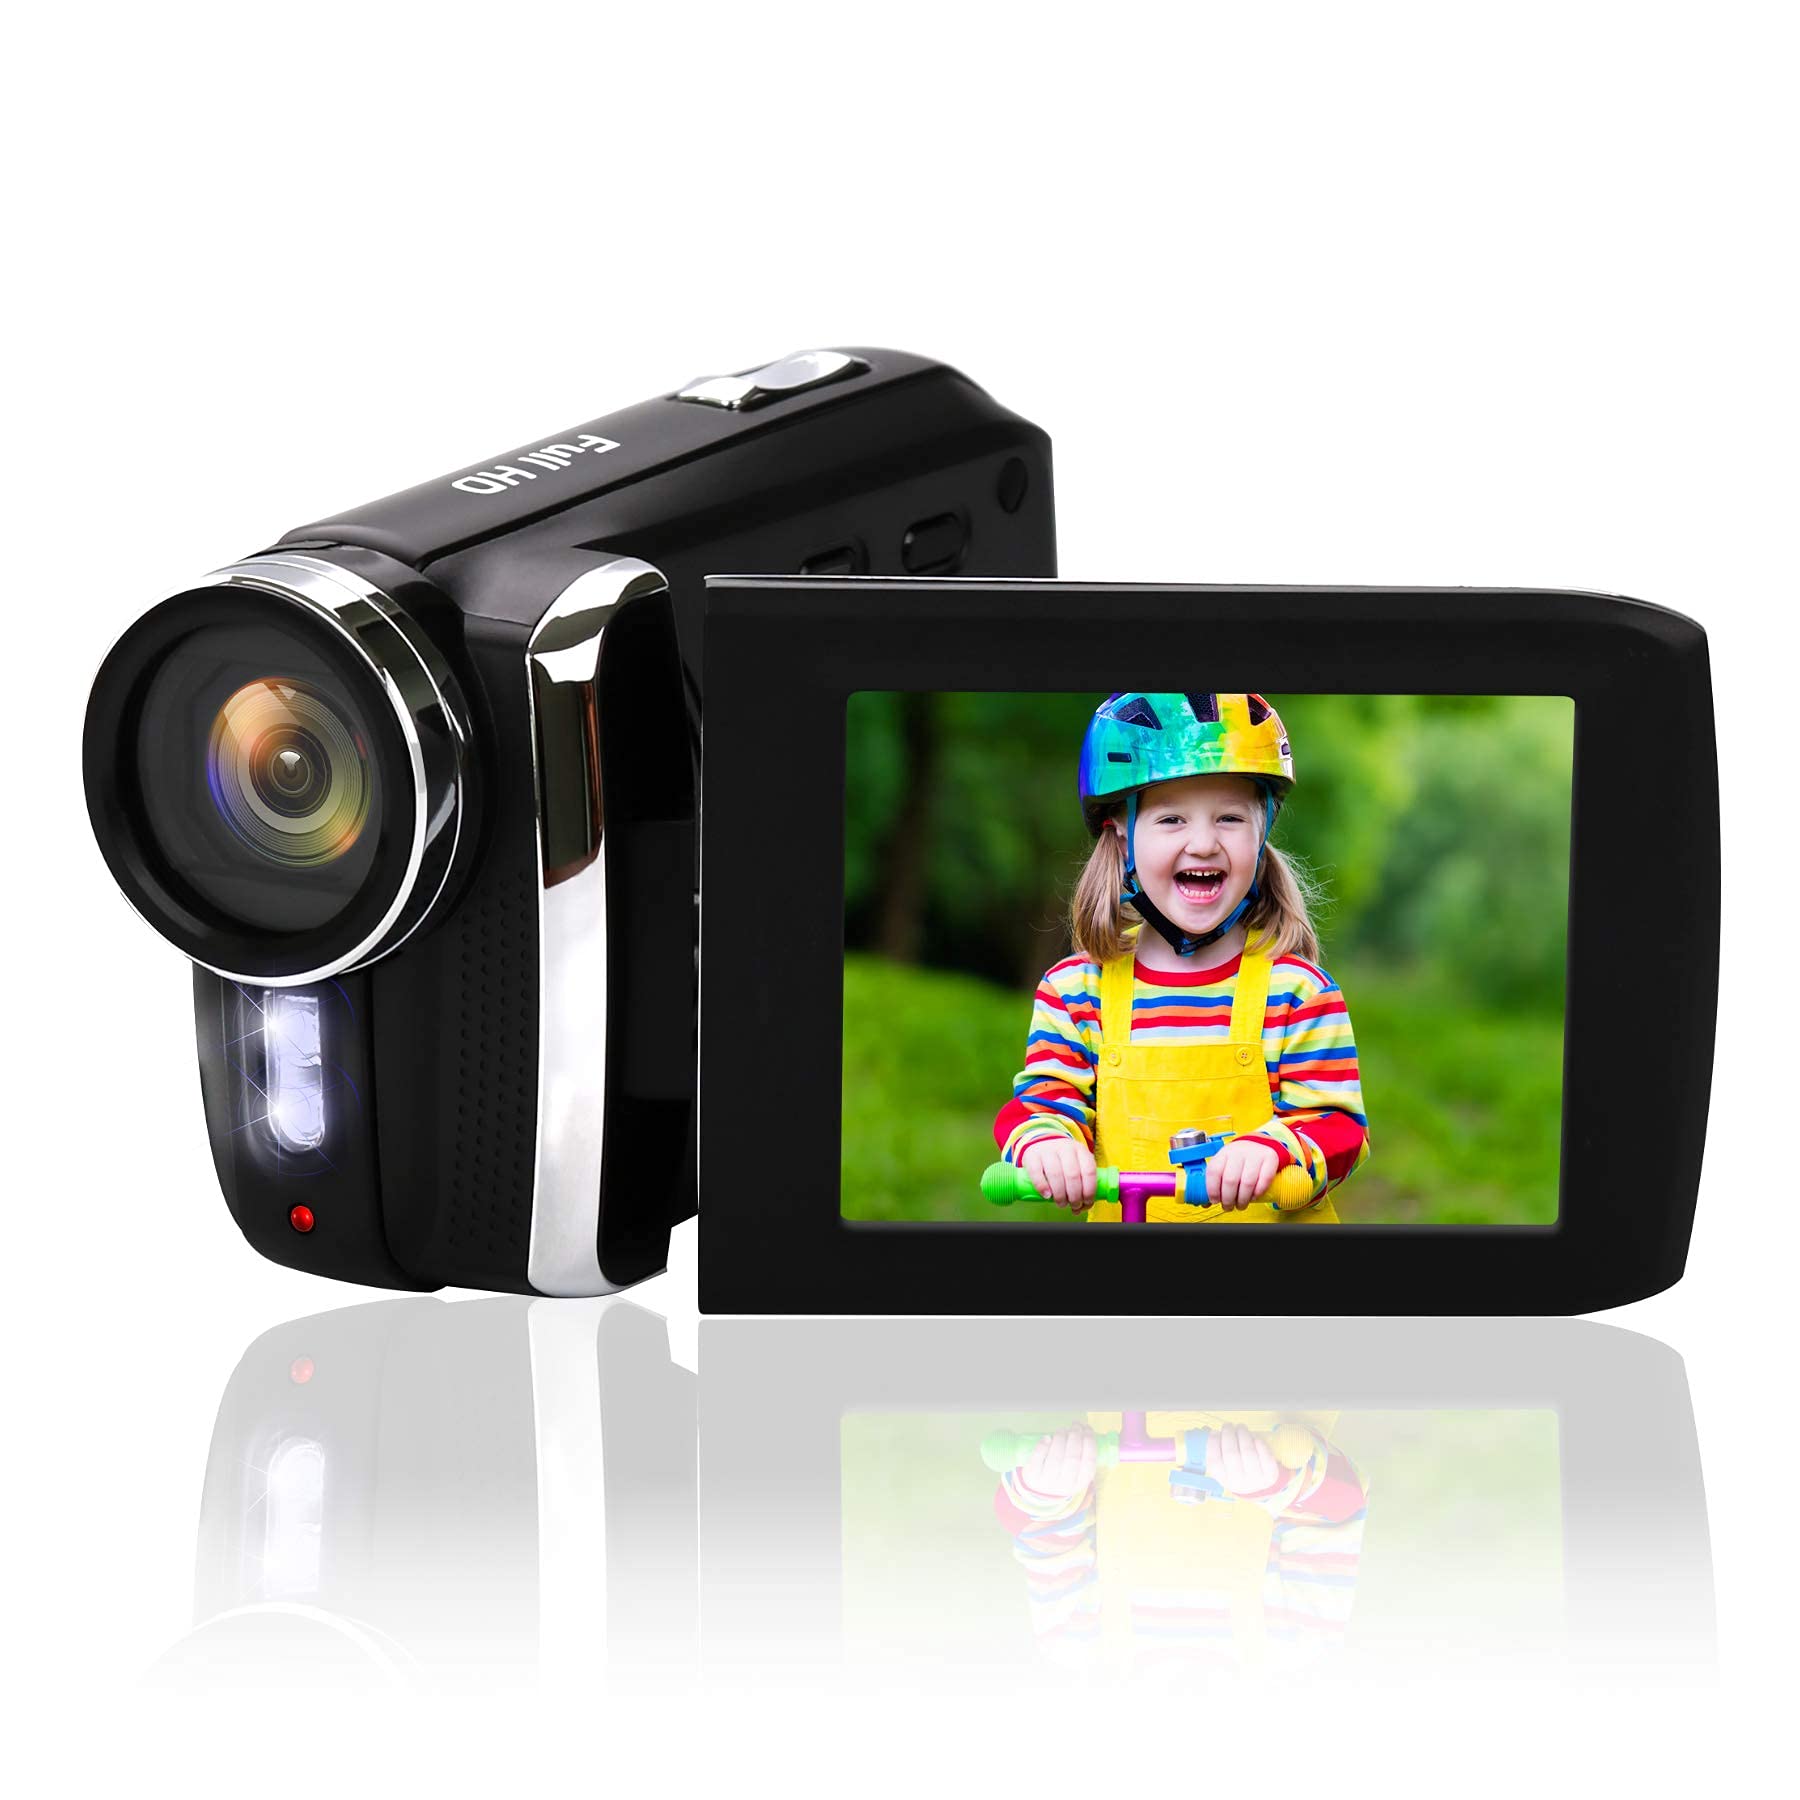 Heegomn Video camera camcorder 27K 36MP Video Recorder camera Vlogging camera for YouTube TikTok Digital camera Recorder Kids ca